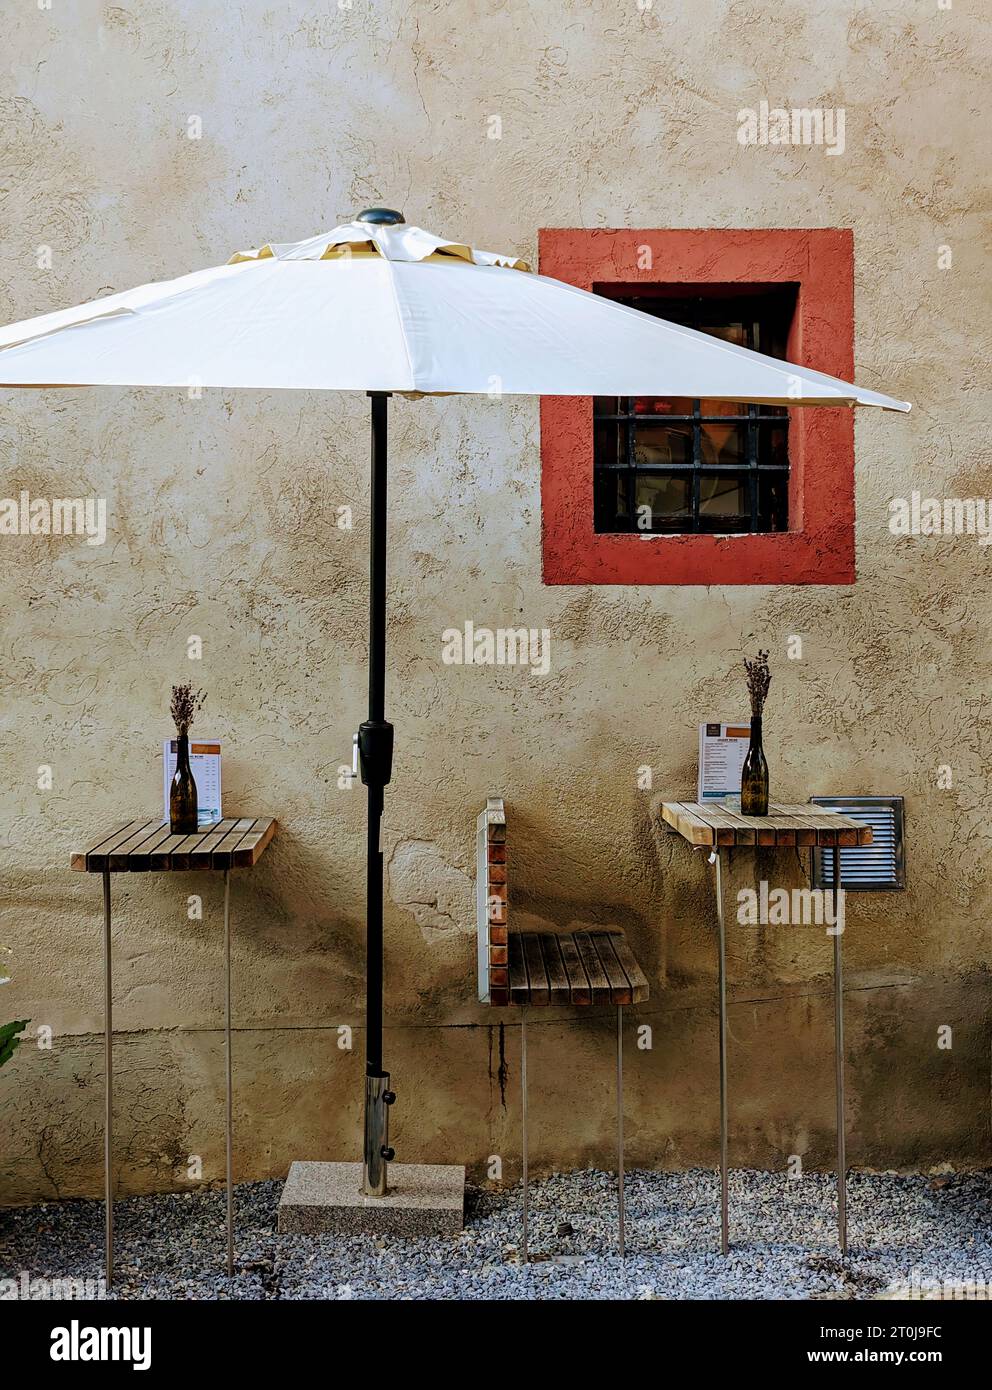 Ein Flair der europäischen Kaffeekultur! Einfache Sitzplätze in einem schattigen Sonnenschirm, die den köstlichen Geschmack erlesener Weine und lokaler Köstlichkeiten versprechen. Stockfoto